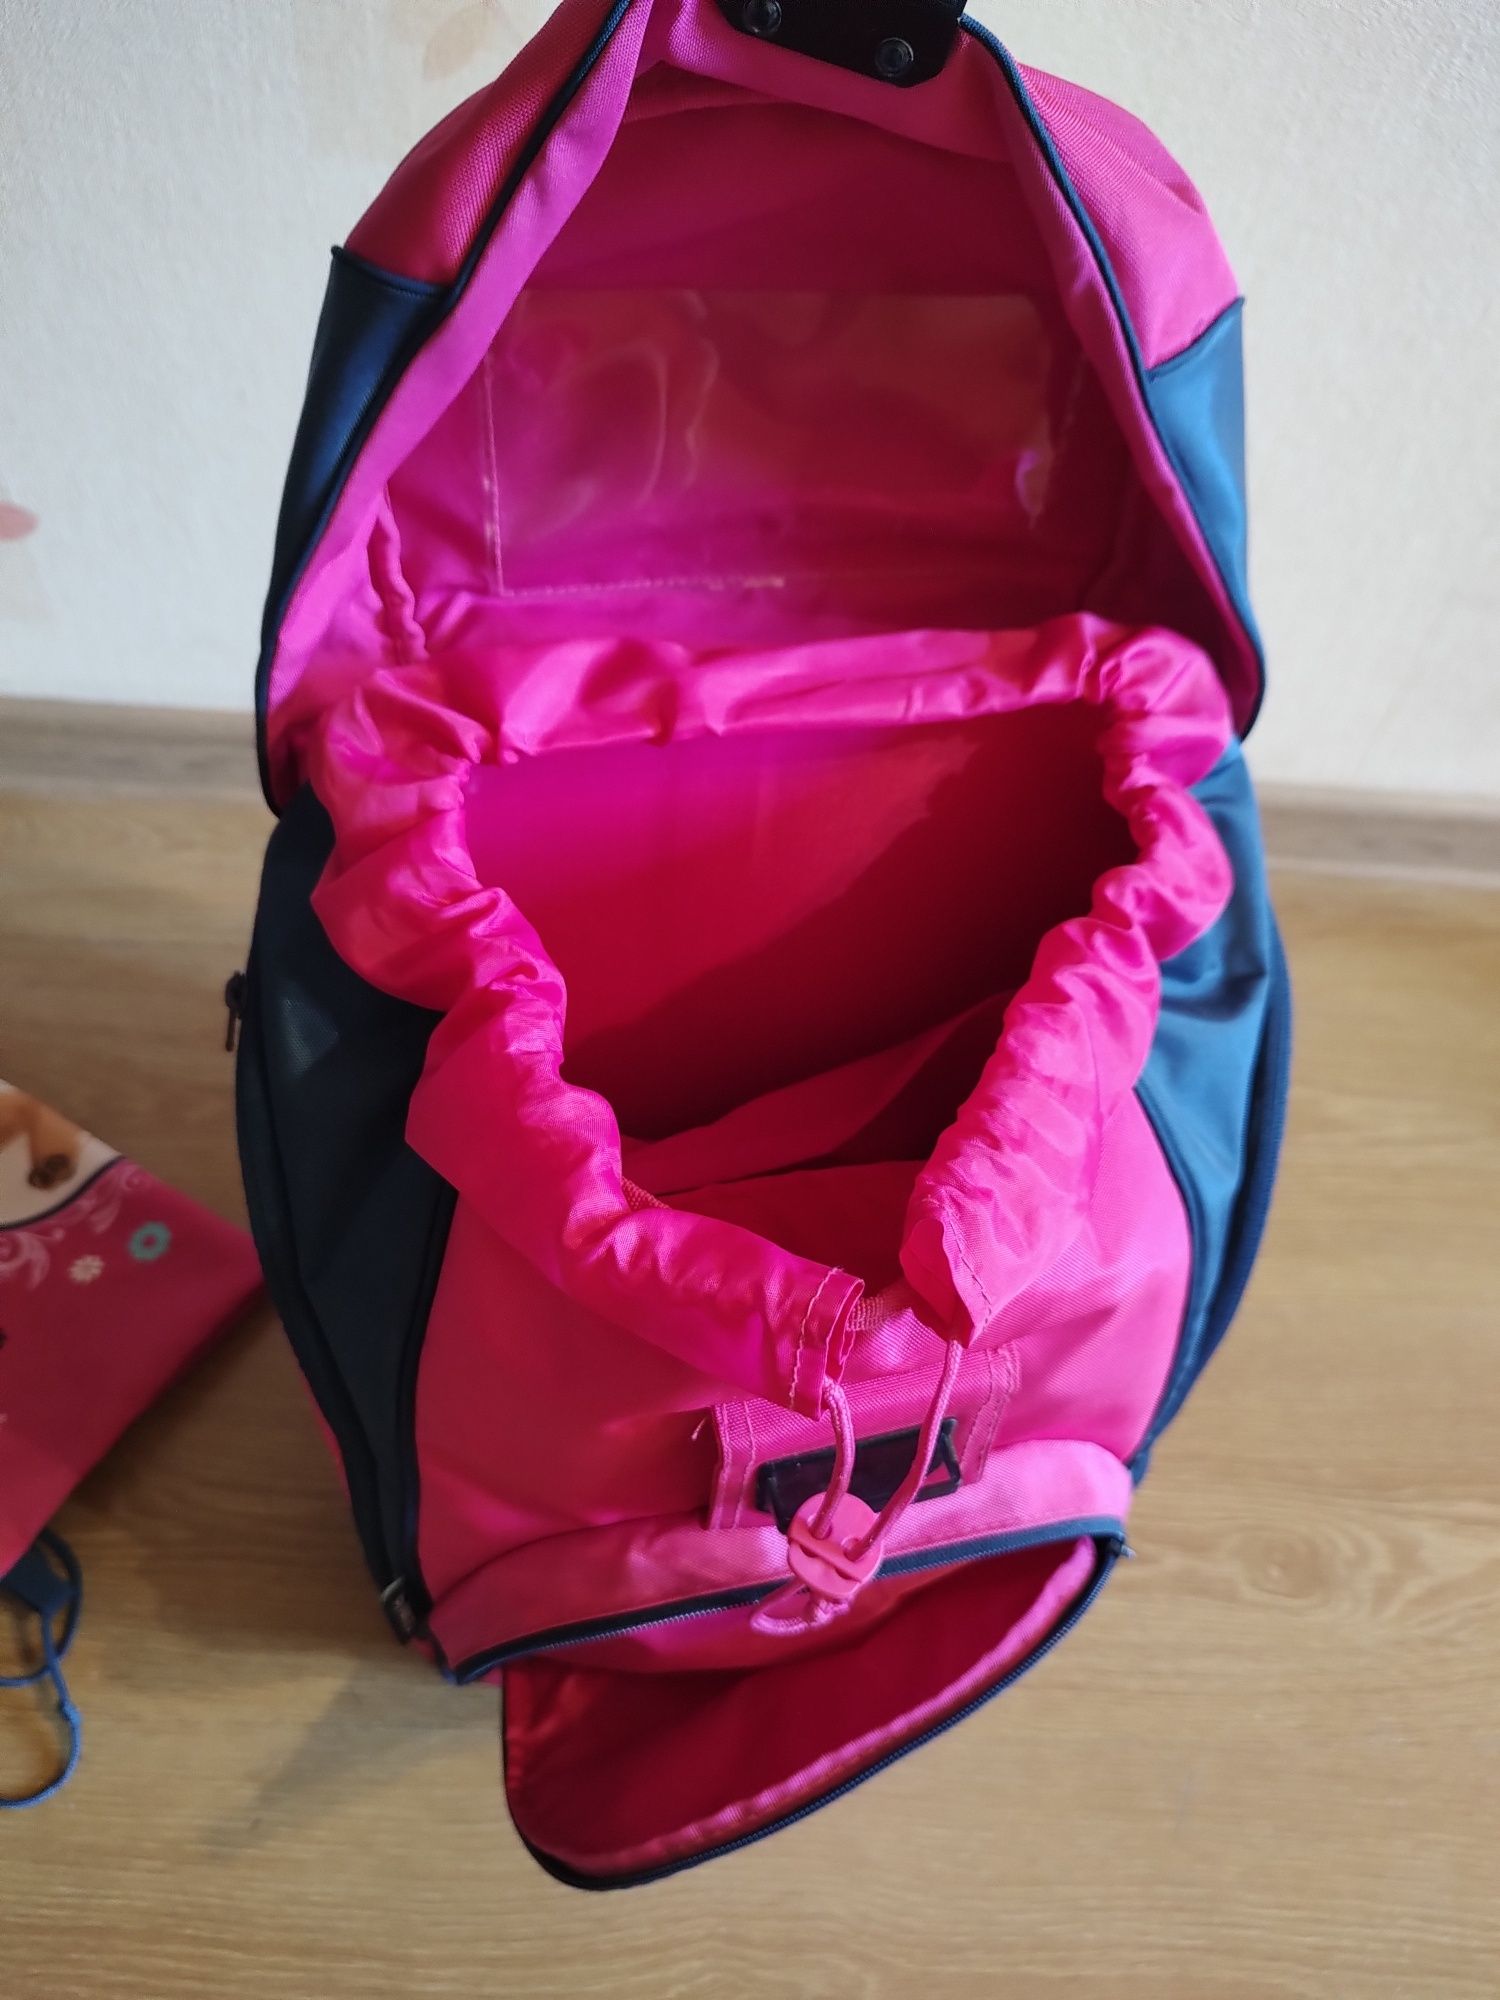 Ортопедичний шкільний рюкзак+пенал+сумка для змінного взуття Flixi Fle